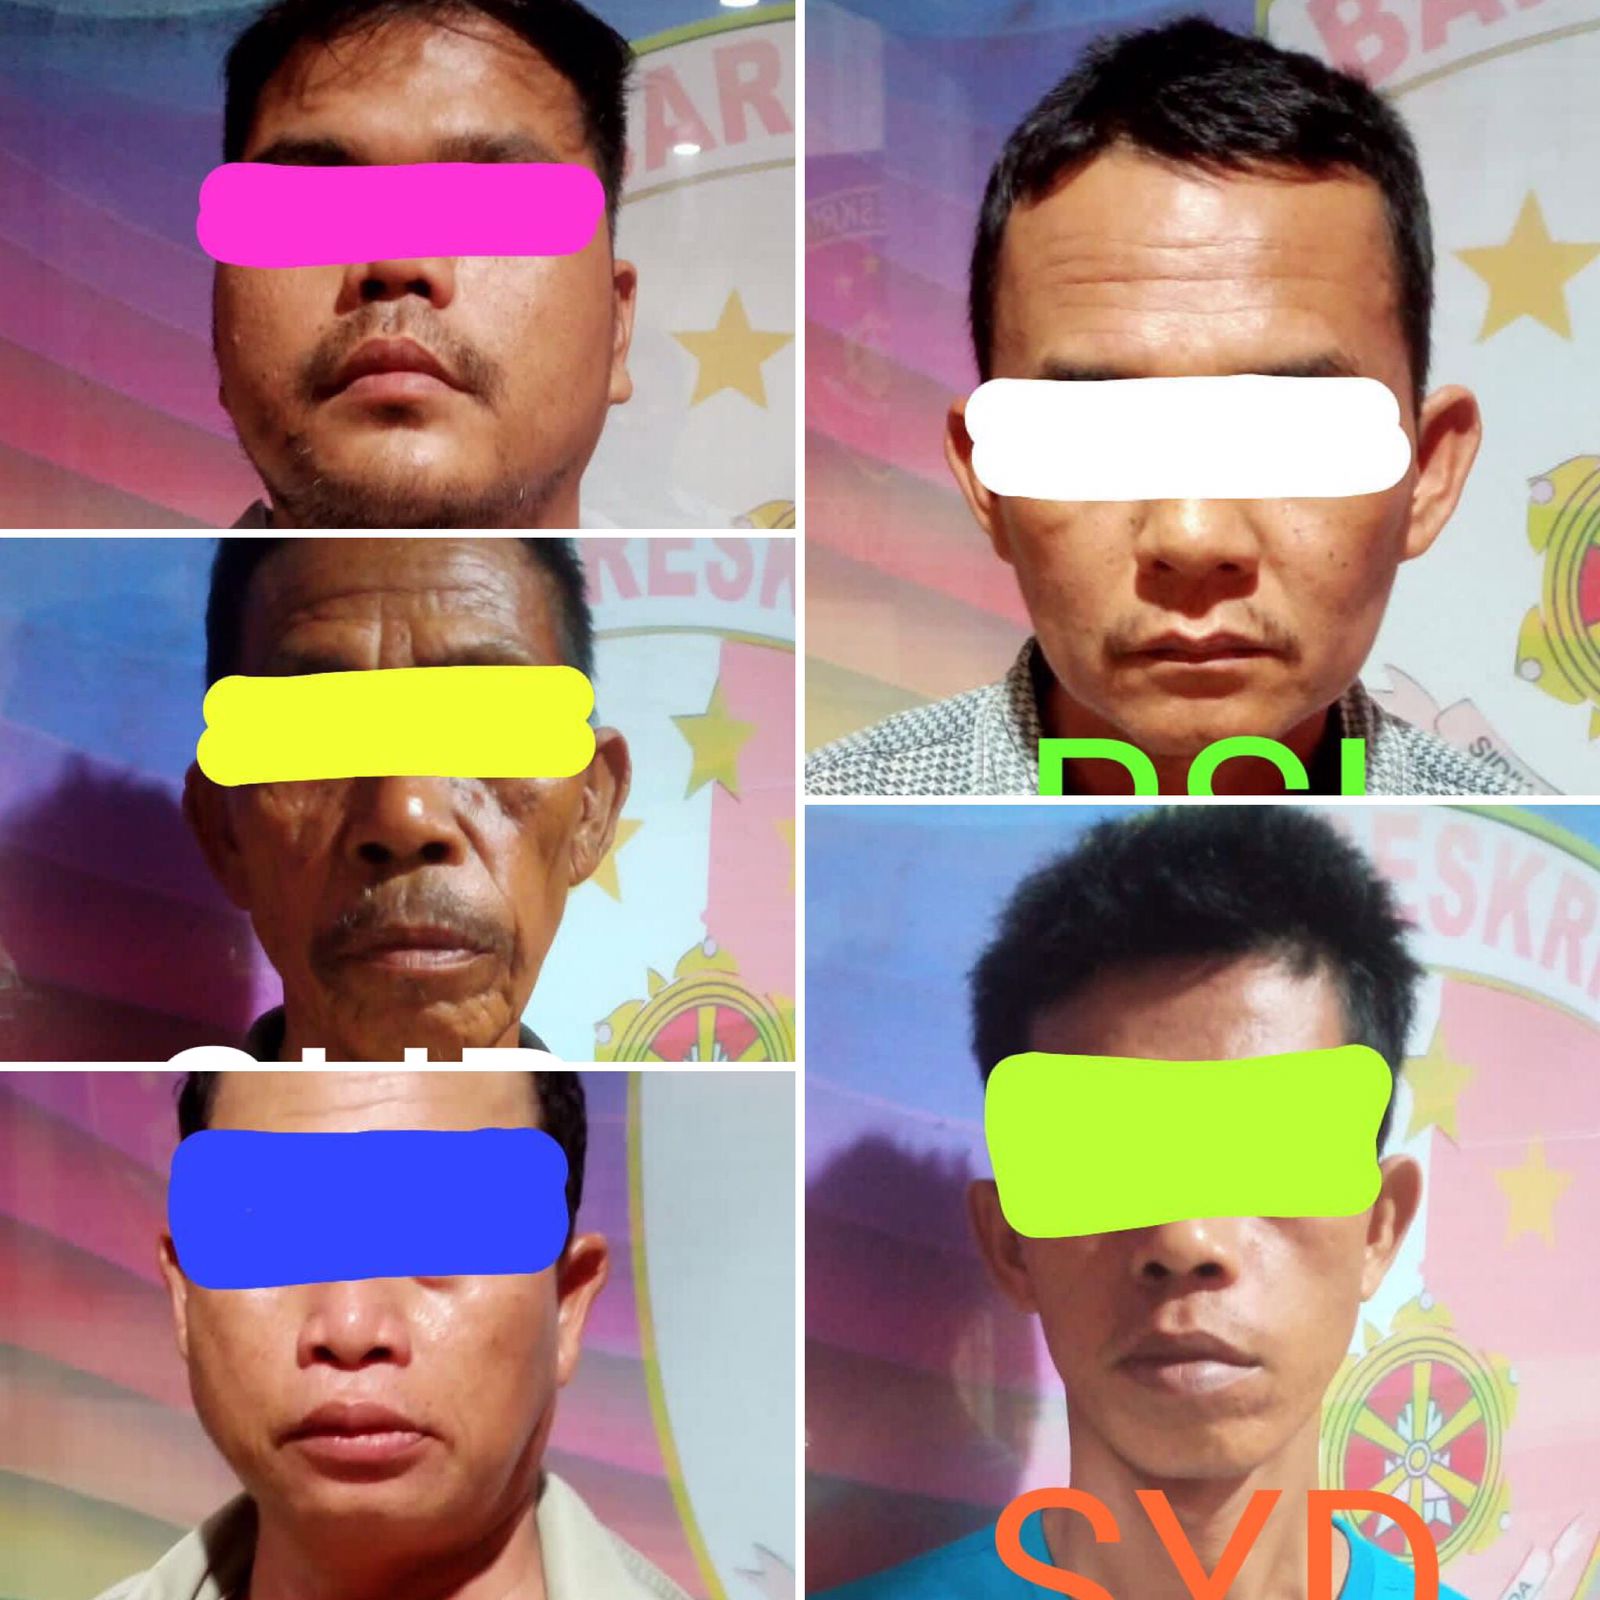 Lapak Judi Sabung Ayam di Sematang Borang Digerebek Polisi, 7 Orang Diamankan